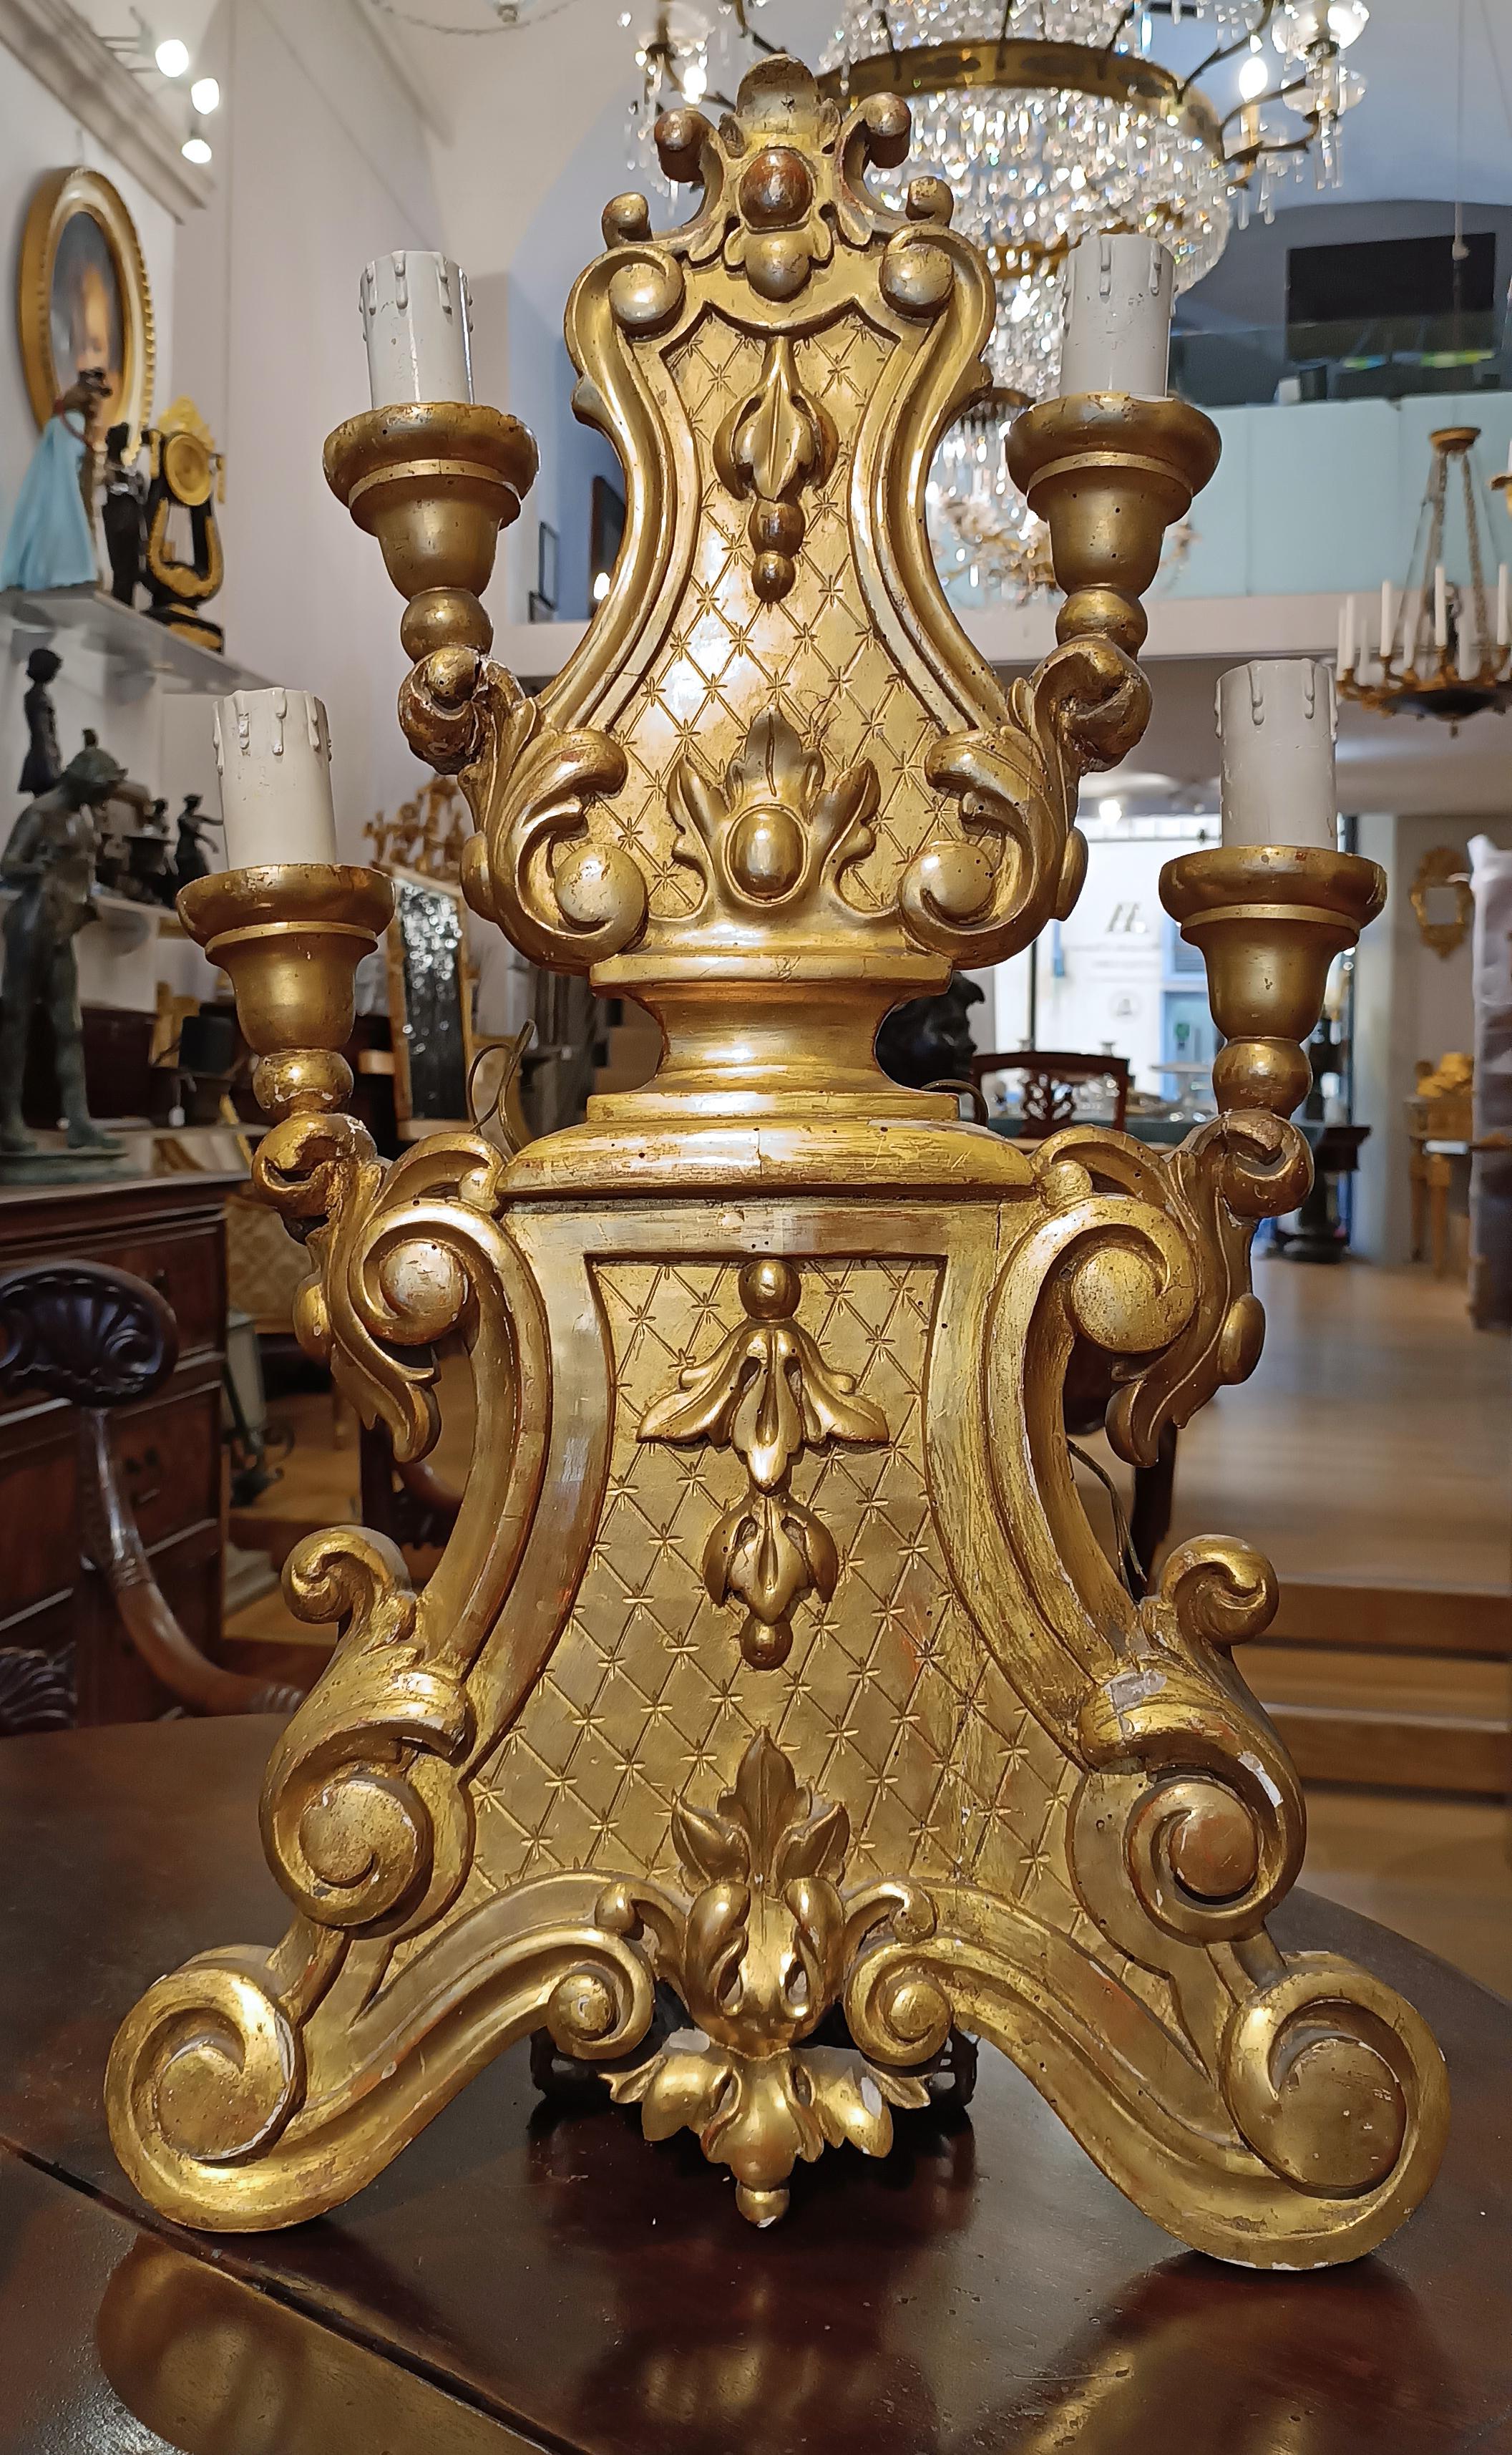 Dieses Paar Tischleuchter ist ein schönes Beispiel für toskanische Manufakturen aus der Mitte des 18. Jahrhunderts. Die aus geschnitztem Holz gefertigten und fein mit reinem Gold vergoldeten Kerzenständer zeugen von hoher Handwerkskunst und